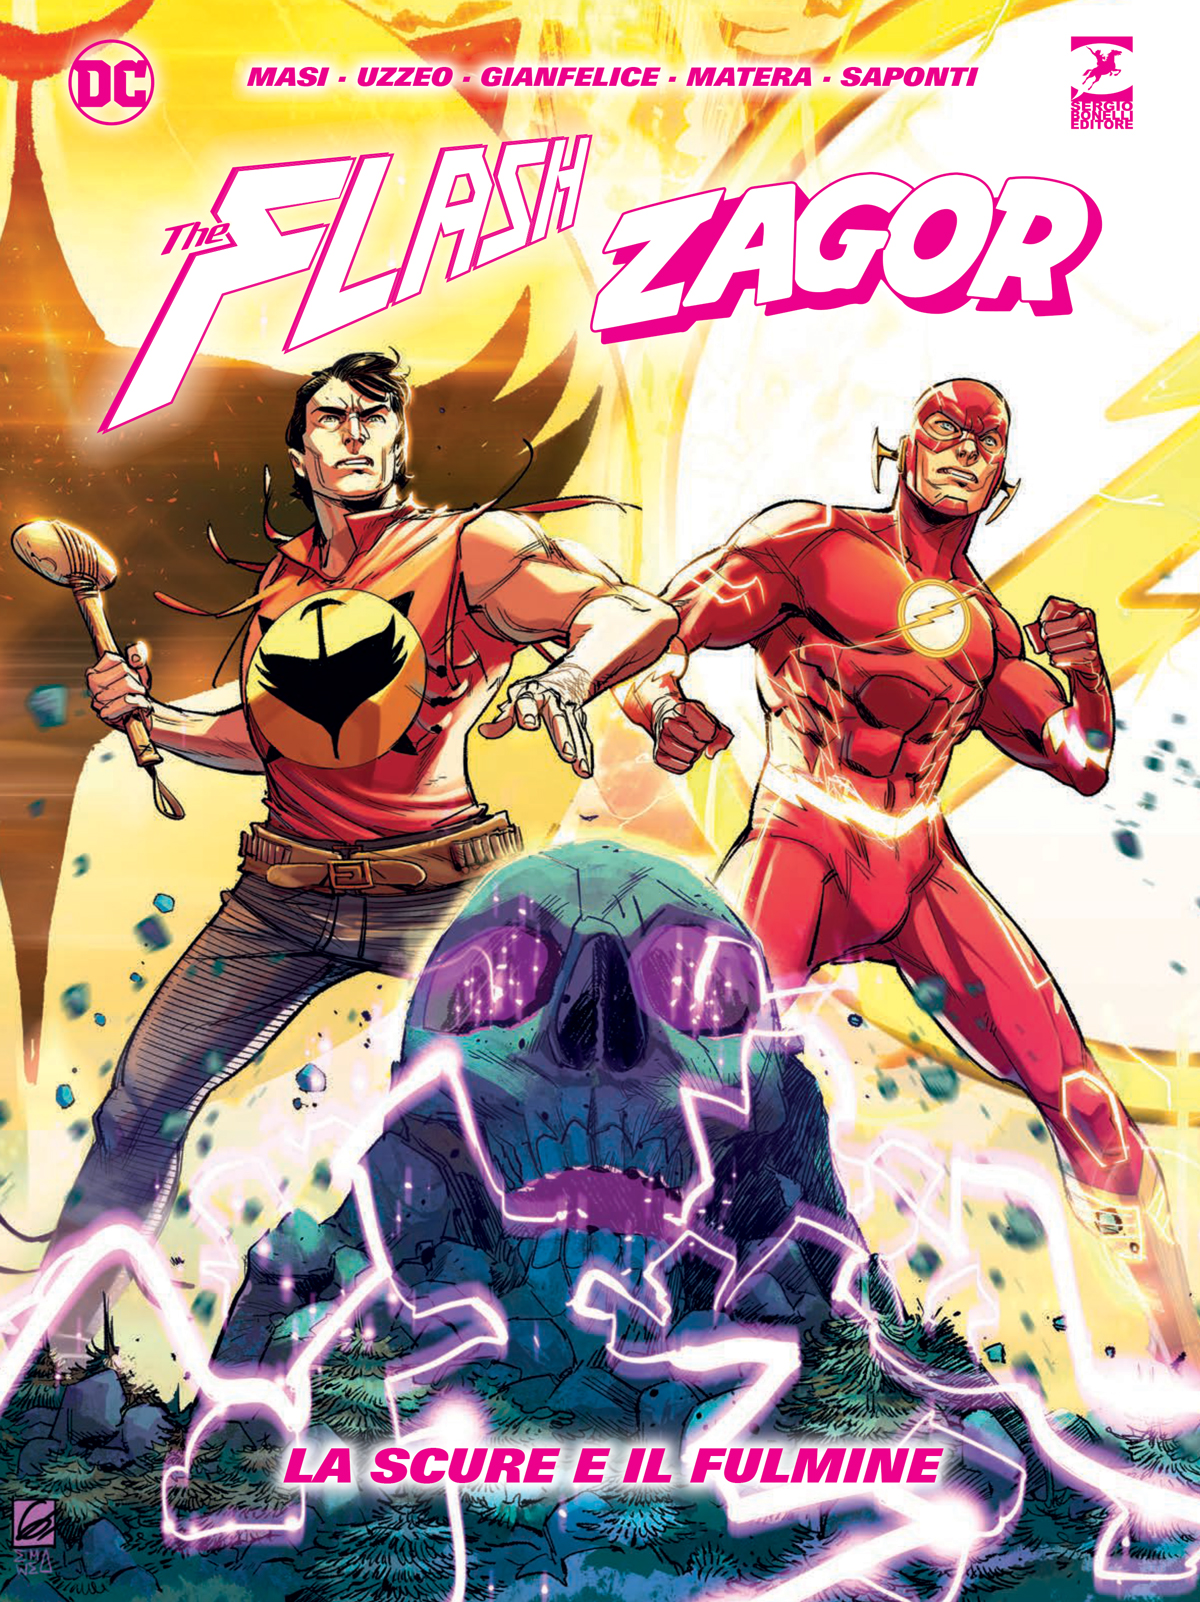 zagor e flash in primo piano nella copertina del volume unico che li vede protagonisti - nerdface